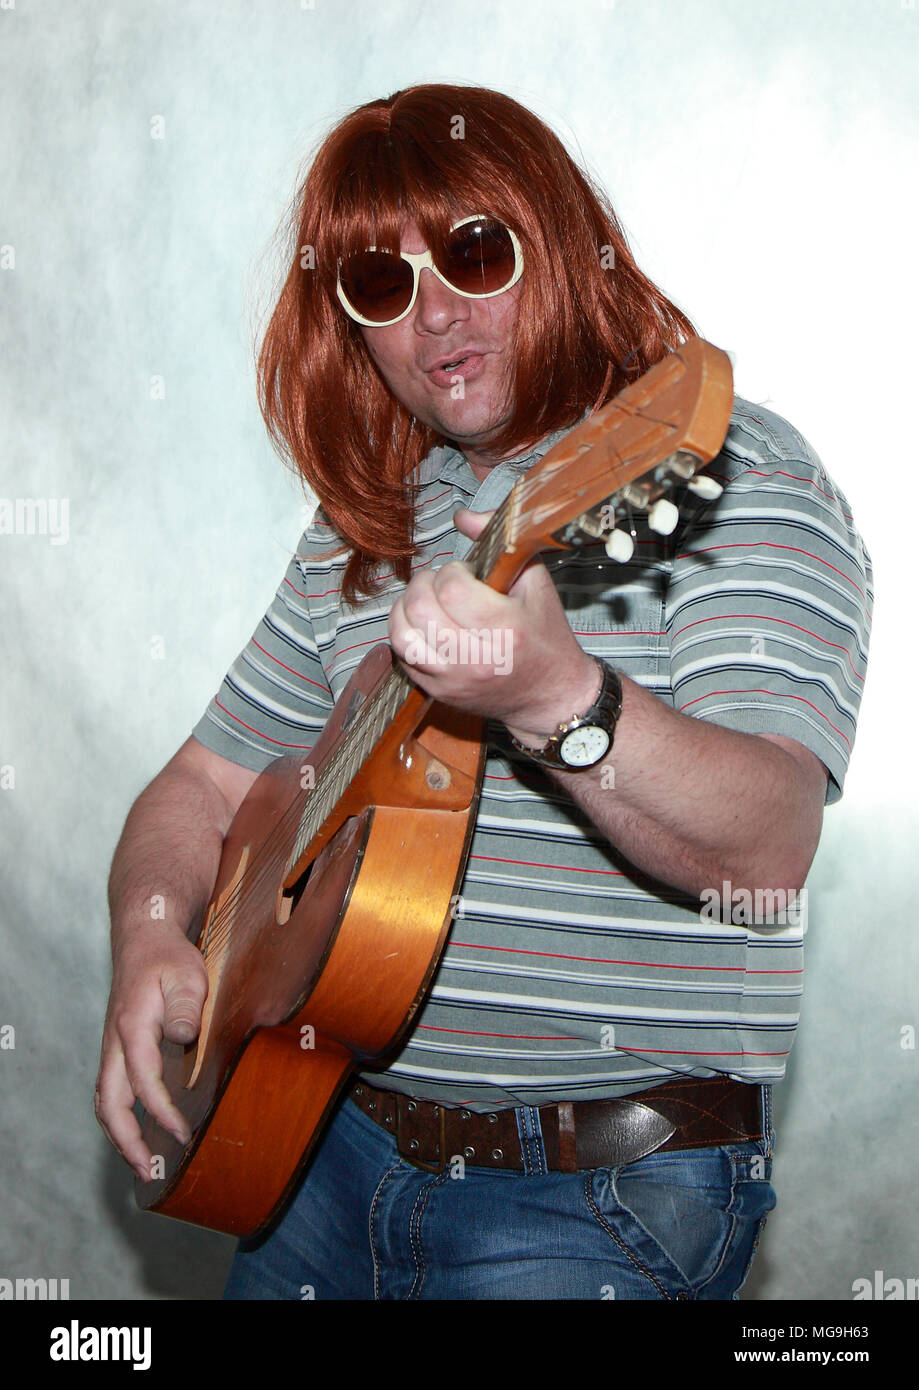 Guitariste avec longs cheveux rouges joue de la guitare et chante quelque chose. Banque D'Images